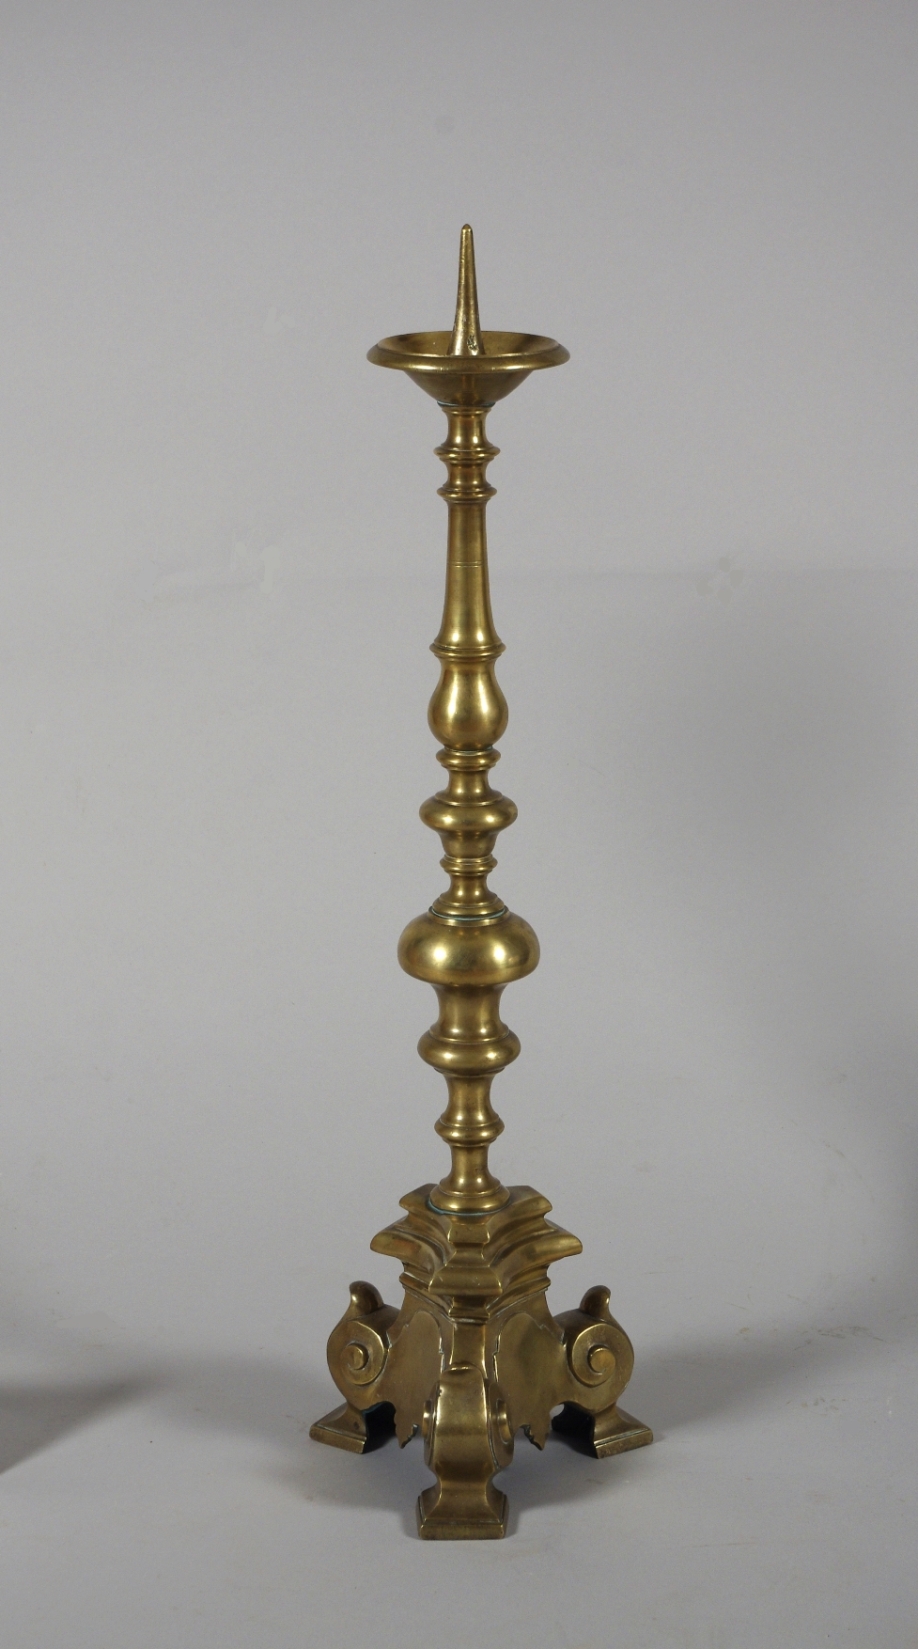 Rare Set of Four 18th Century Tall Brass Altar Sticks